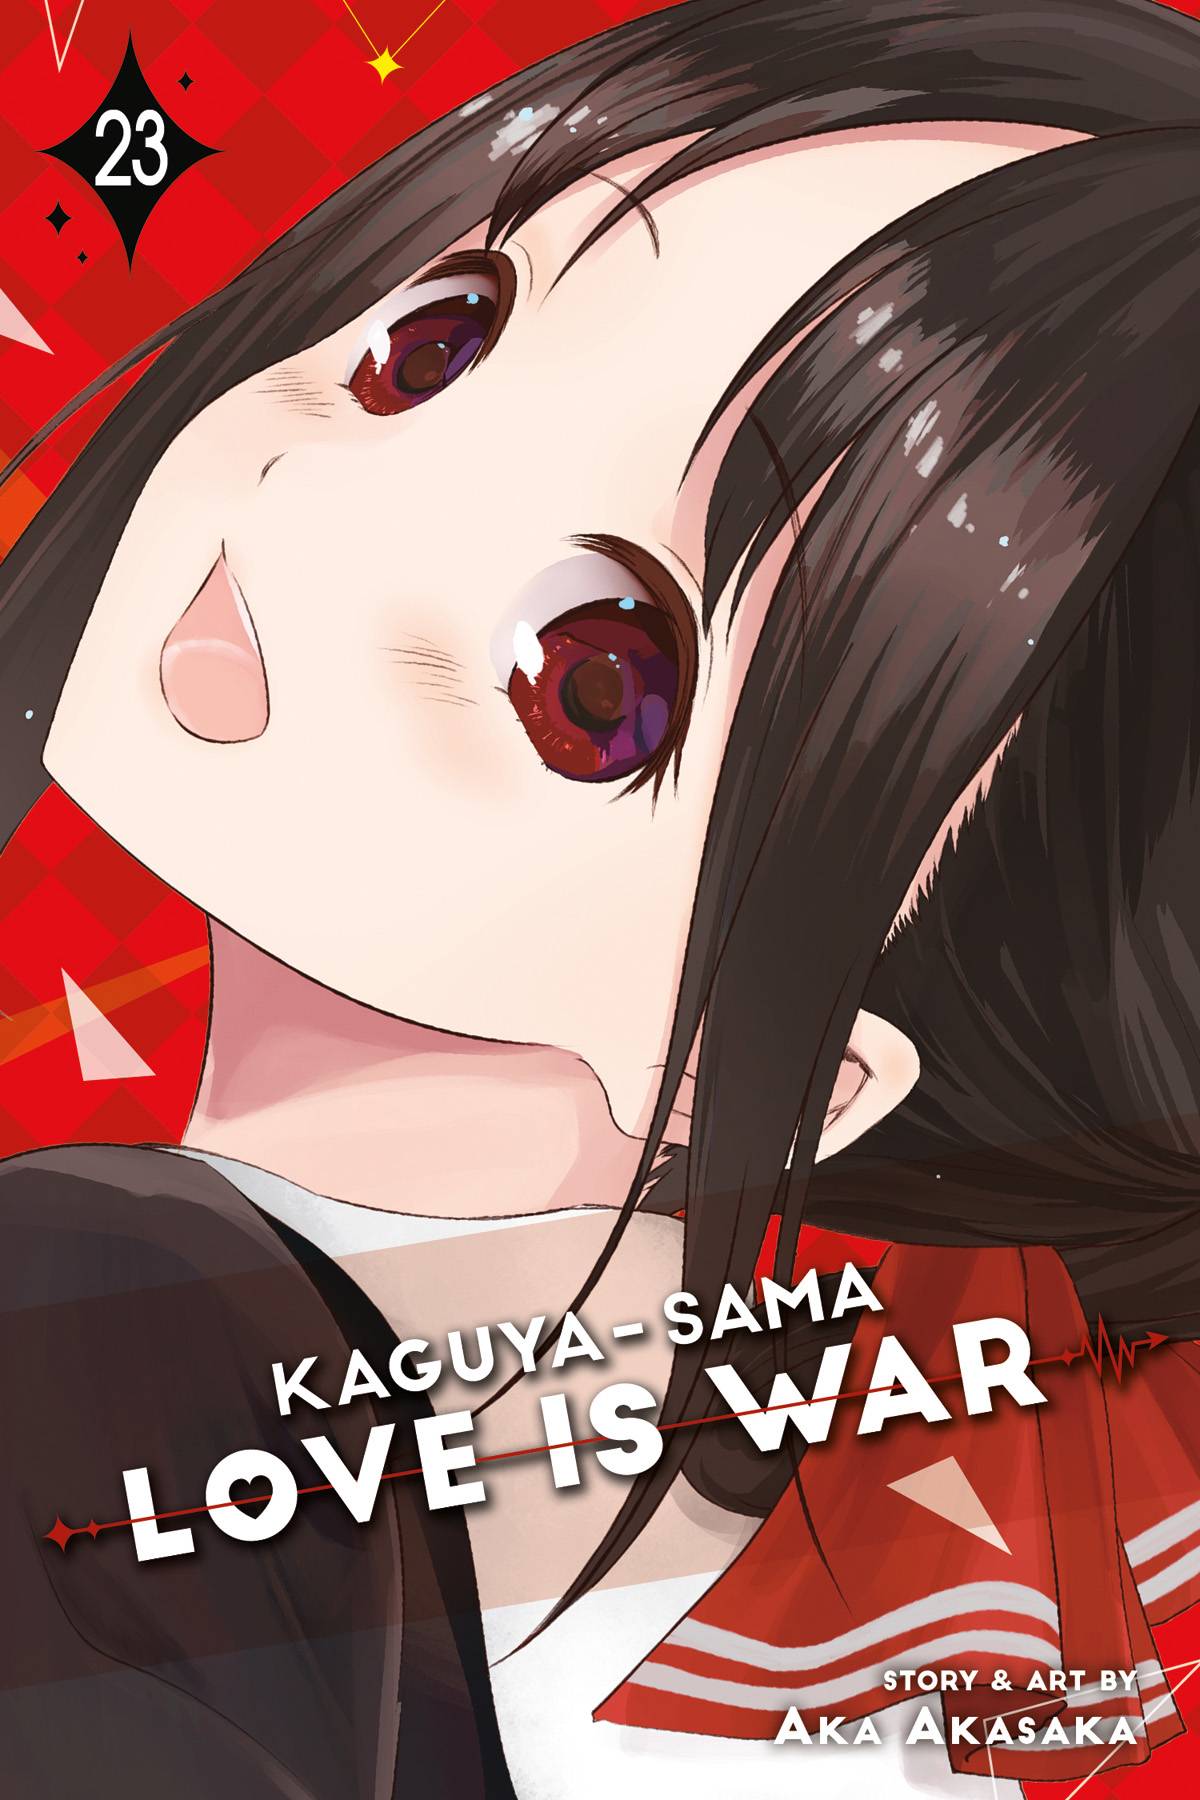 Kaguya-Sama: Love Is War Volume 23